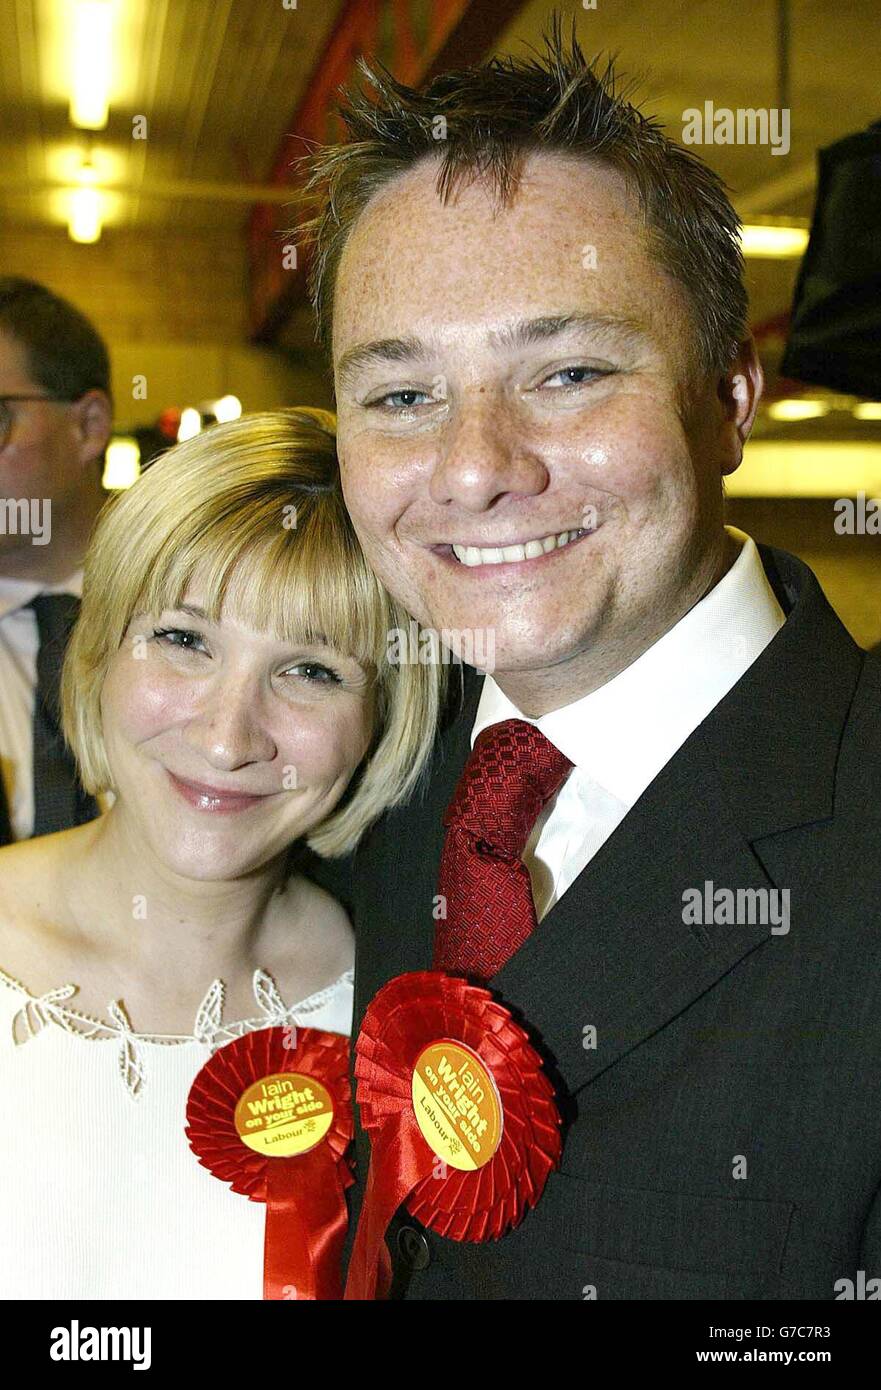 Der siegreiche Labour-Kandidat Iain Wright mit seiner Frau vor der Ankündigung, dass er die Hartlepool-Nachwahl von etwa 2,000 Wählern des Liberaldemokraten Jody Dunn gewann, der ihn knapp an zweiter Stelle antrat. Stockfoto